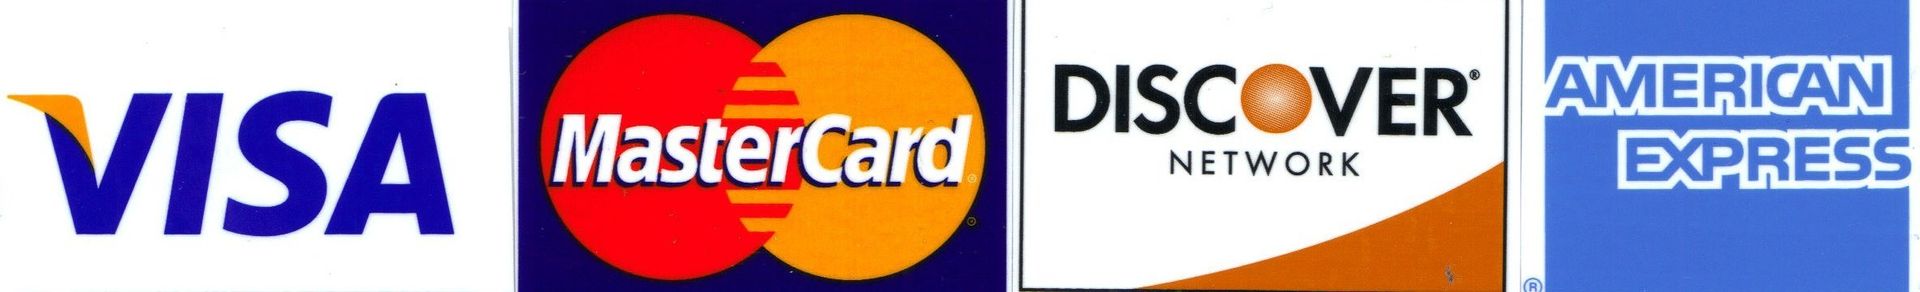 VISA< MASTERCARD< DISCOVERY< AMERICAN EXPRESS CREDIT Card logos